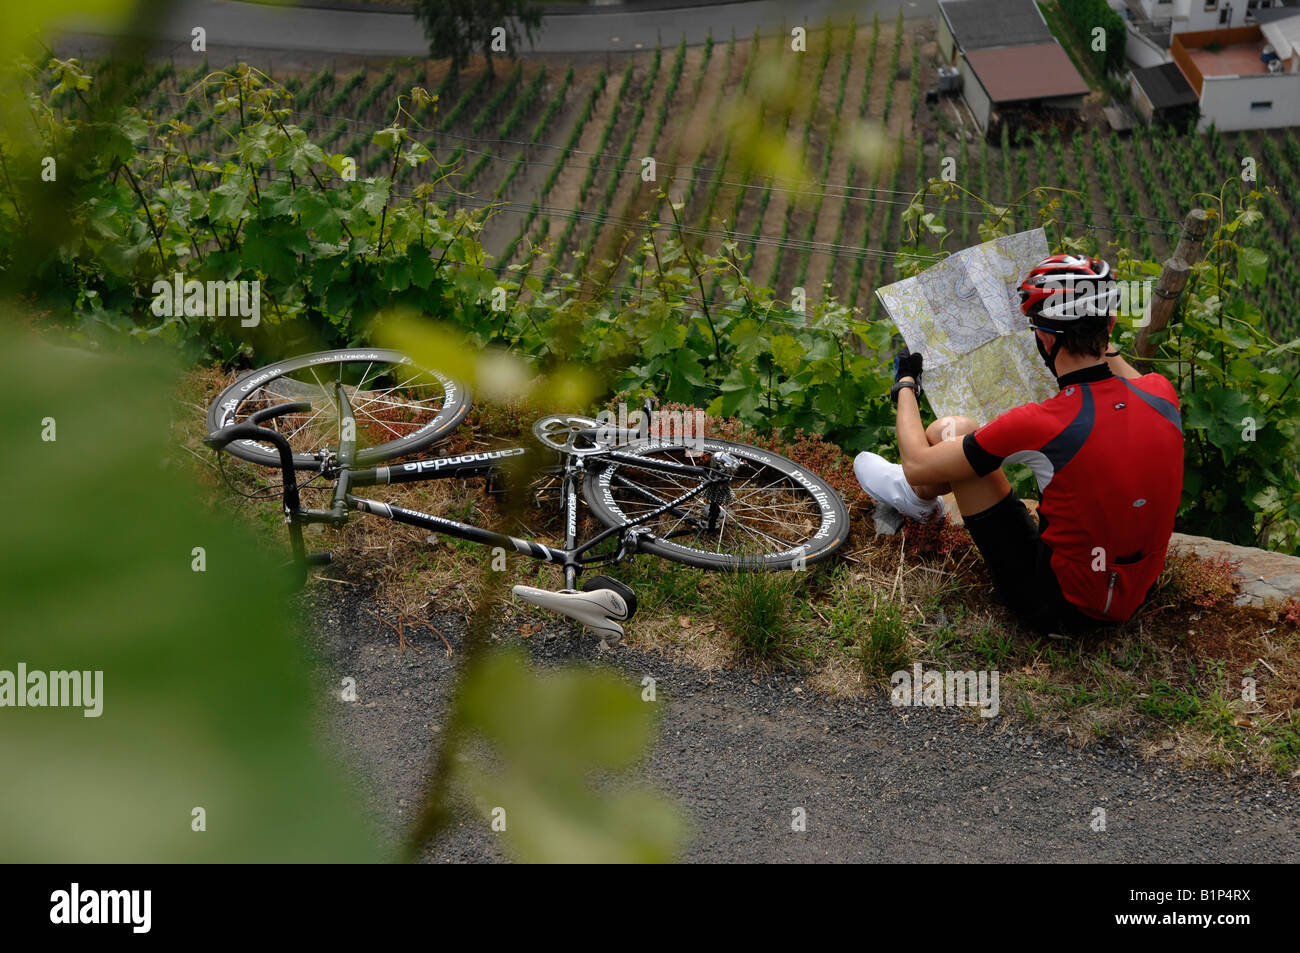 Radfahrer in den Weinbergen rund um Bad Neuenahr Ahrweiler und Eifel Mit MR Stock Photo